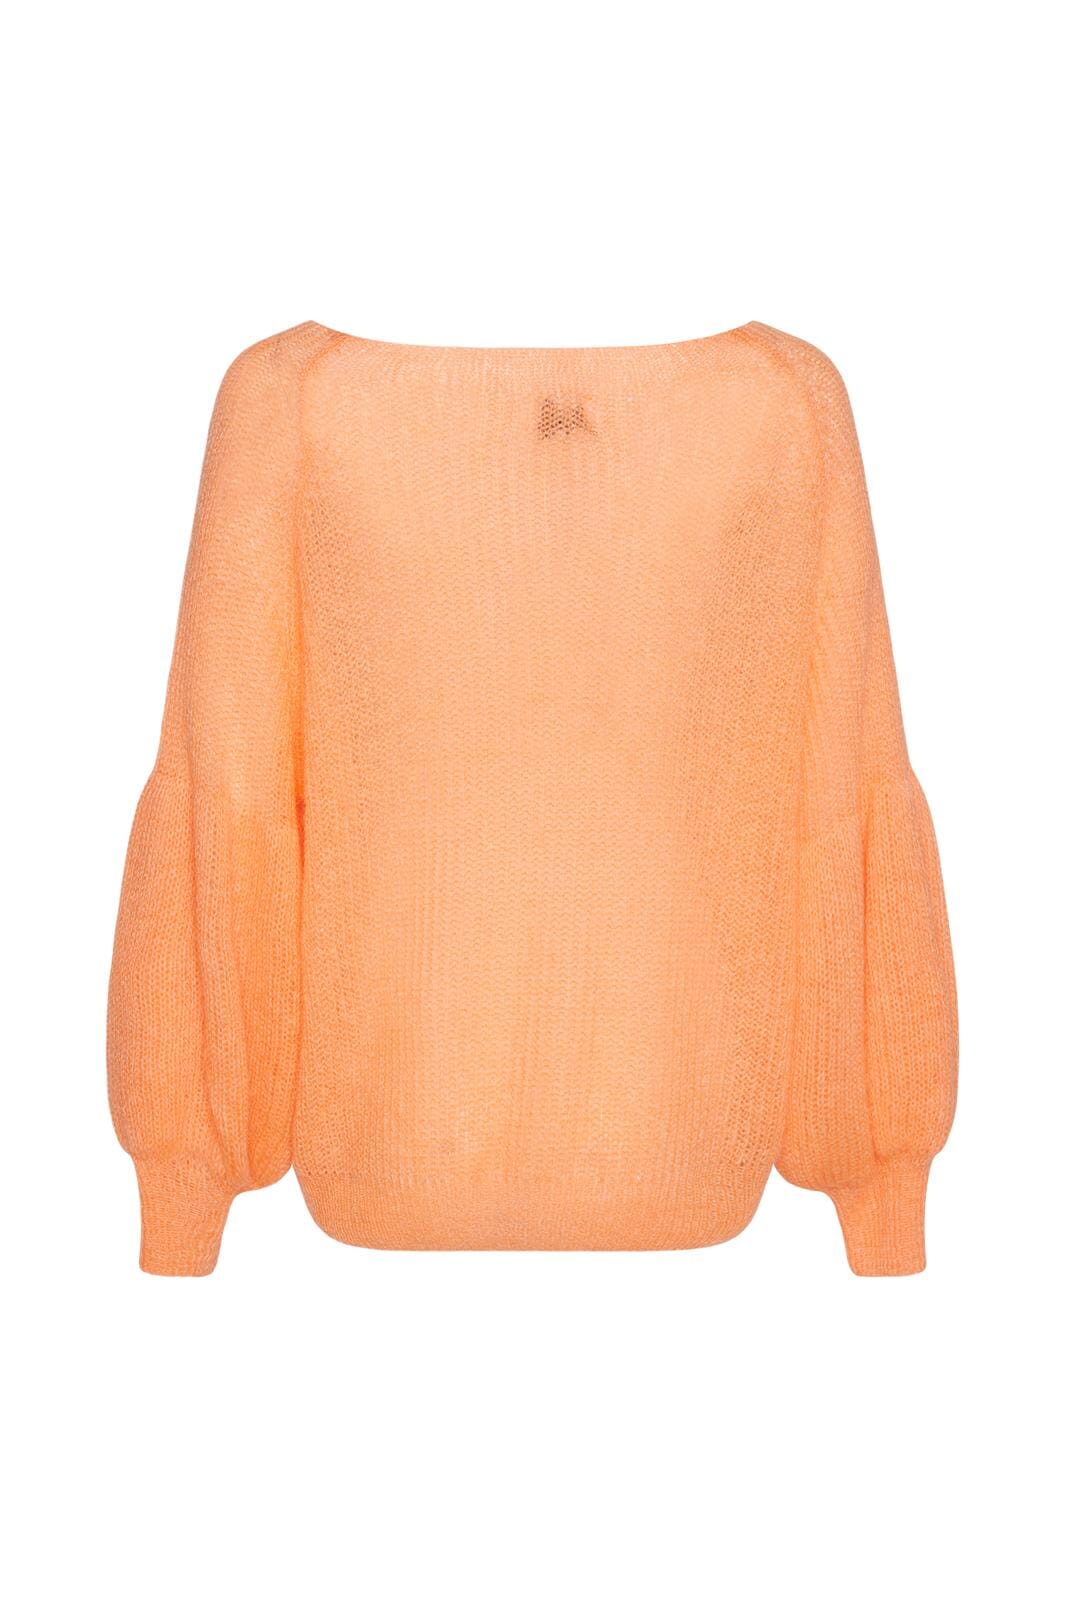 Noella - Miko Knit Sweater - 918 Melon